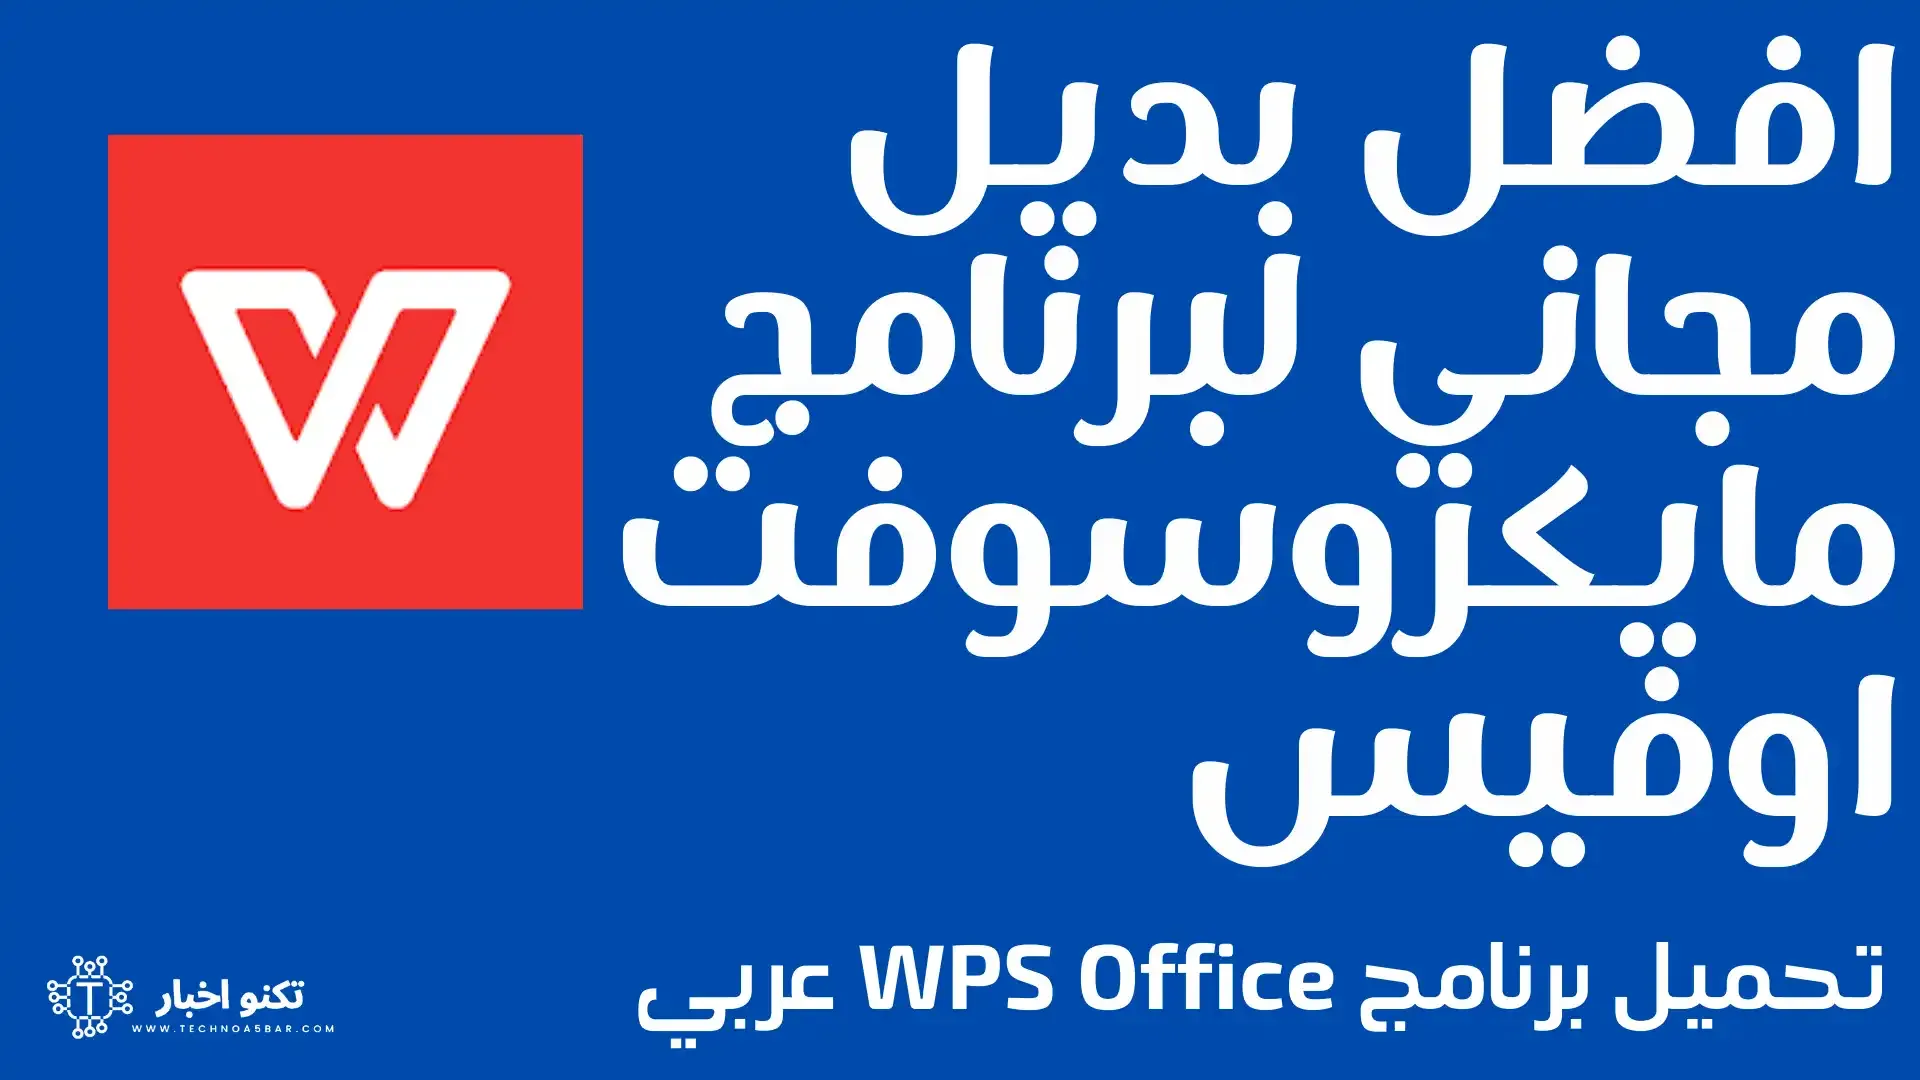 تحميل برنامج WPS Office عربي افضل بديل لبرنامج مايكروسوفت اوفيس مجانا